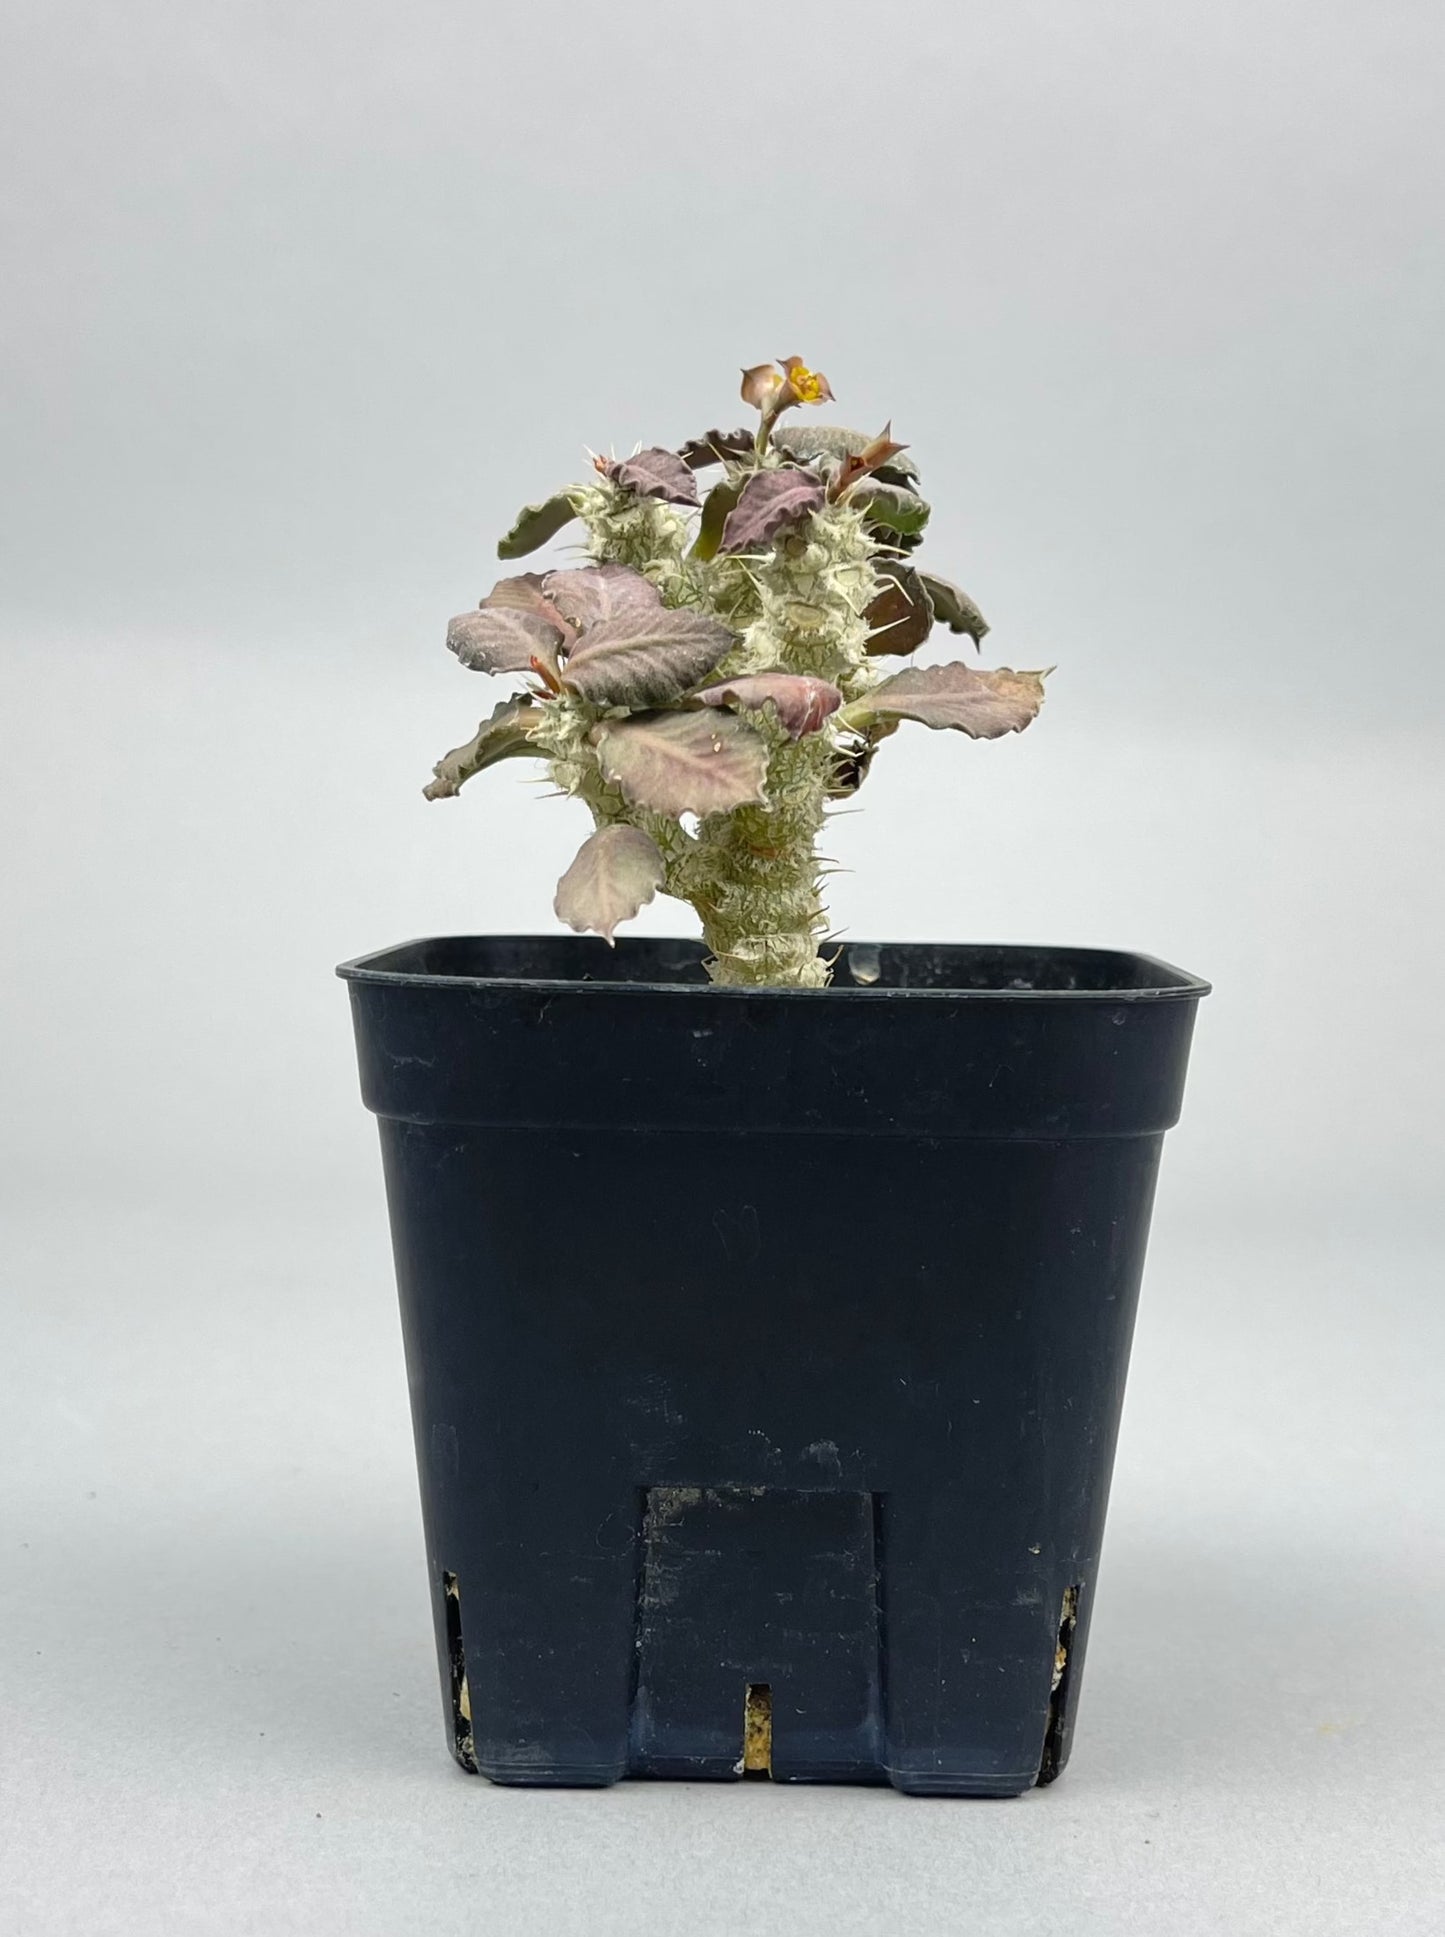 ユーフォルビア トゥレアレンシス 「Euphorbia tulearensis」/EU0028 ①